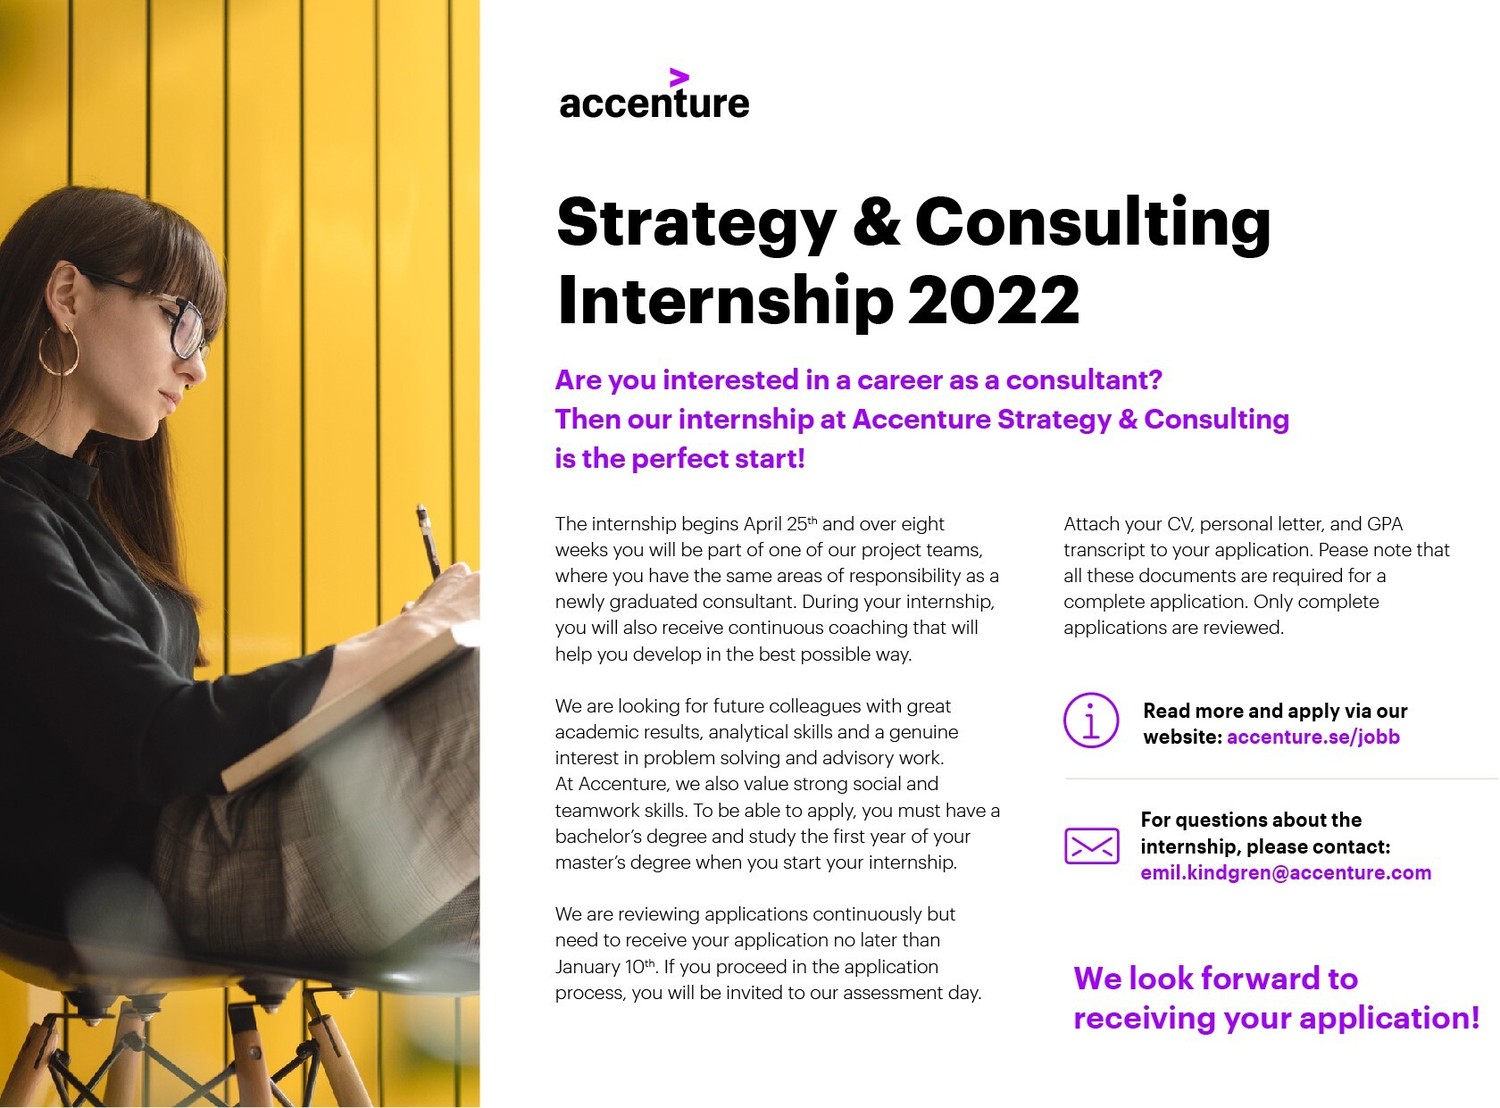 Accenture image